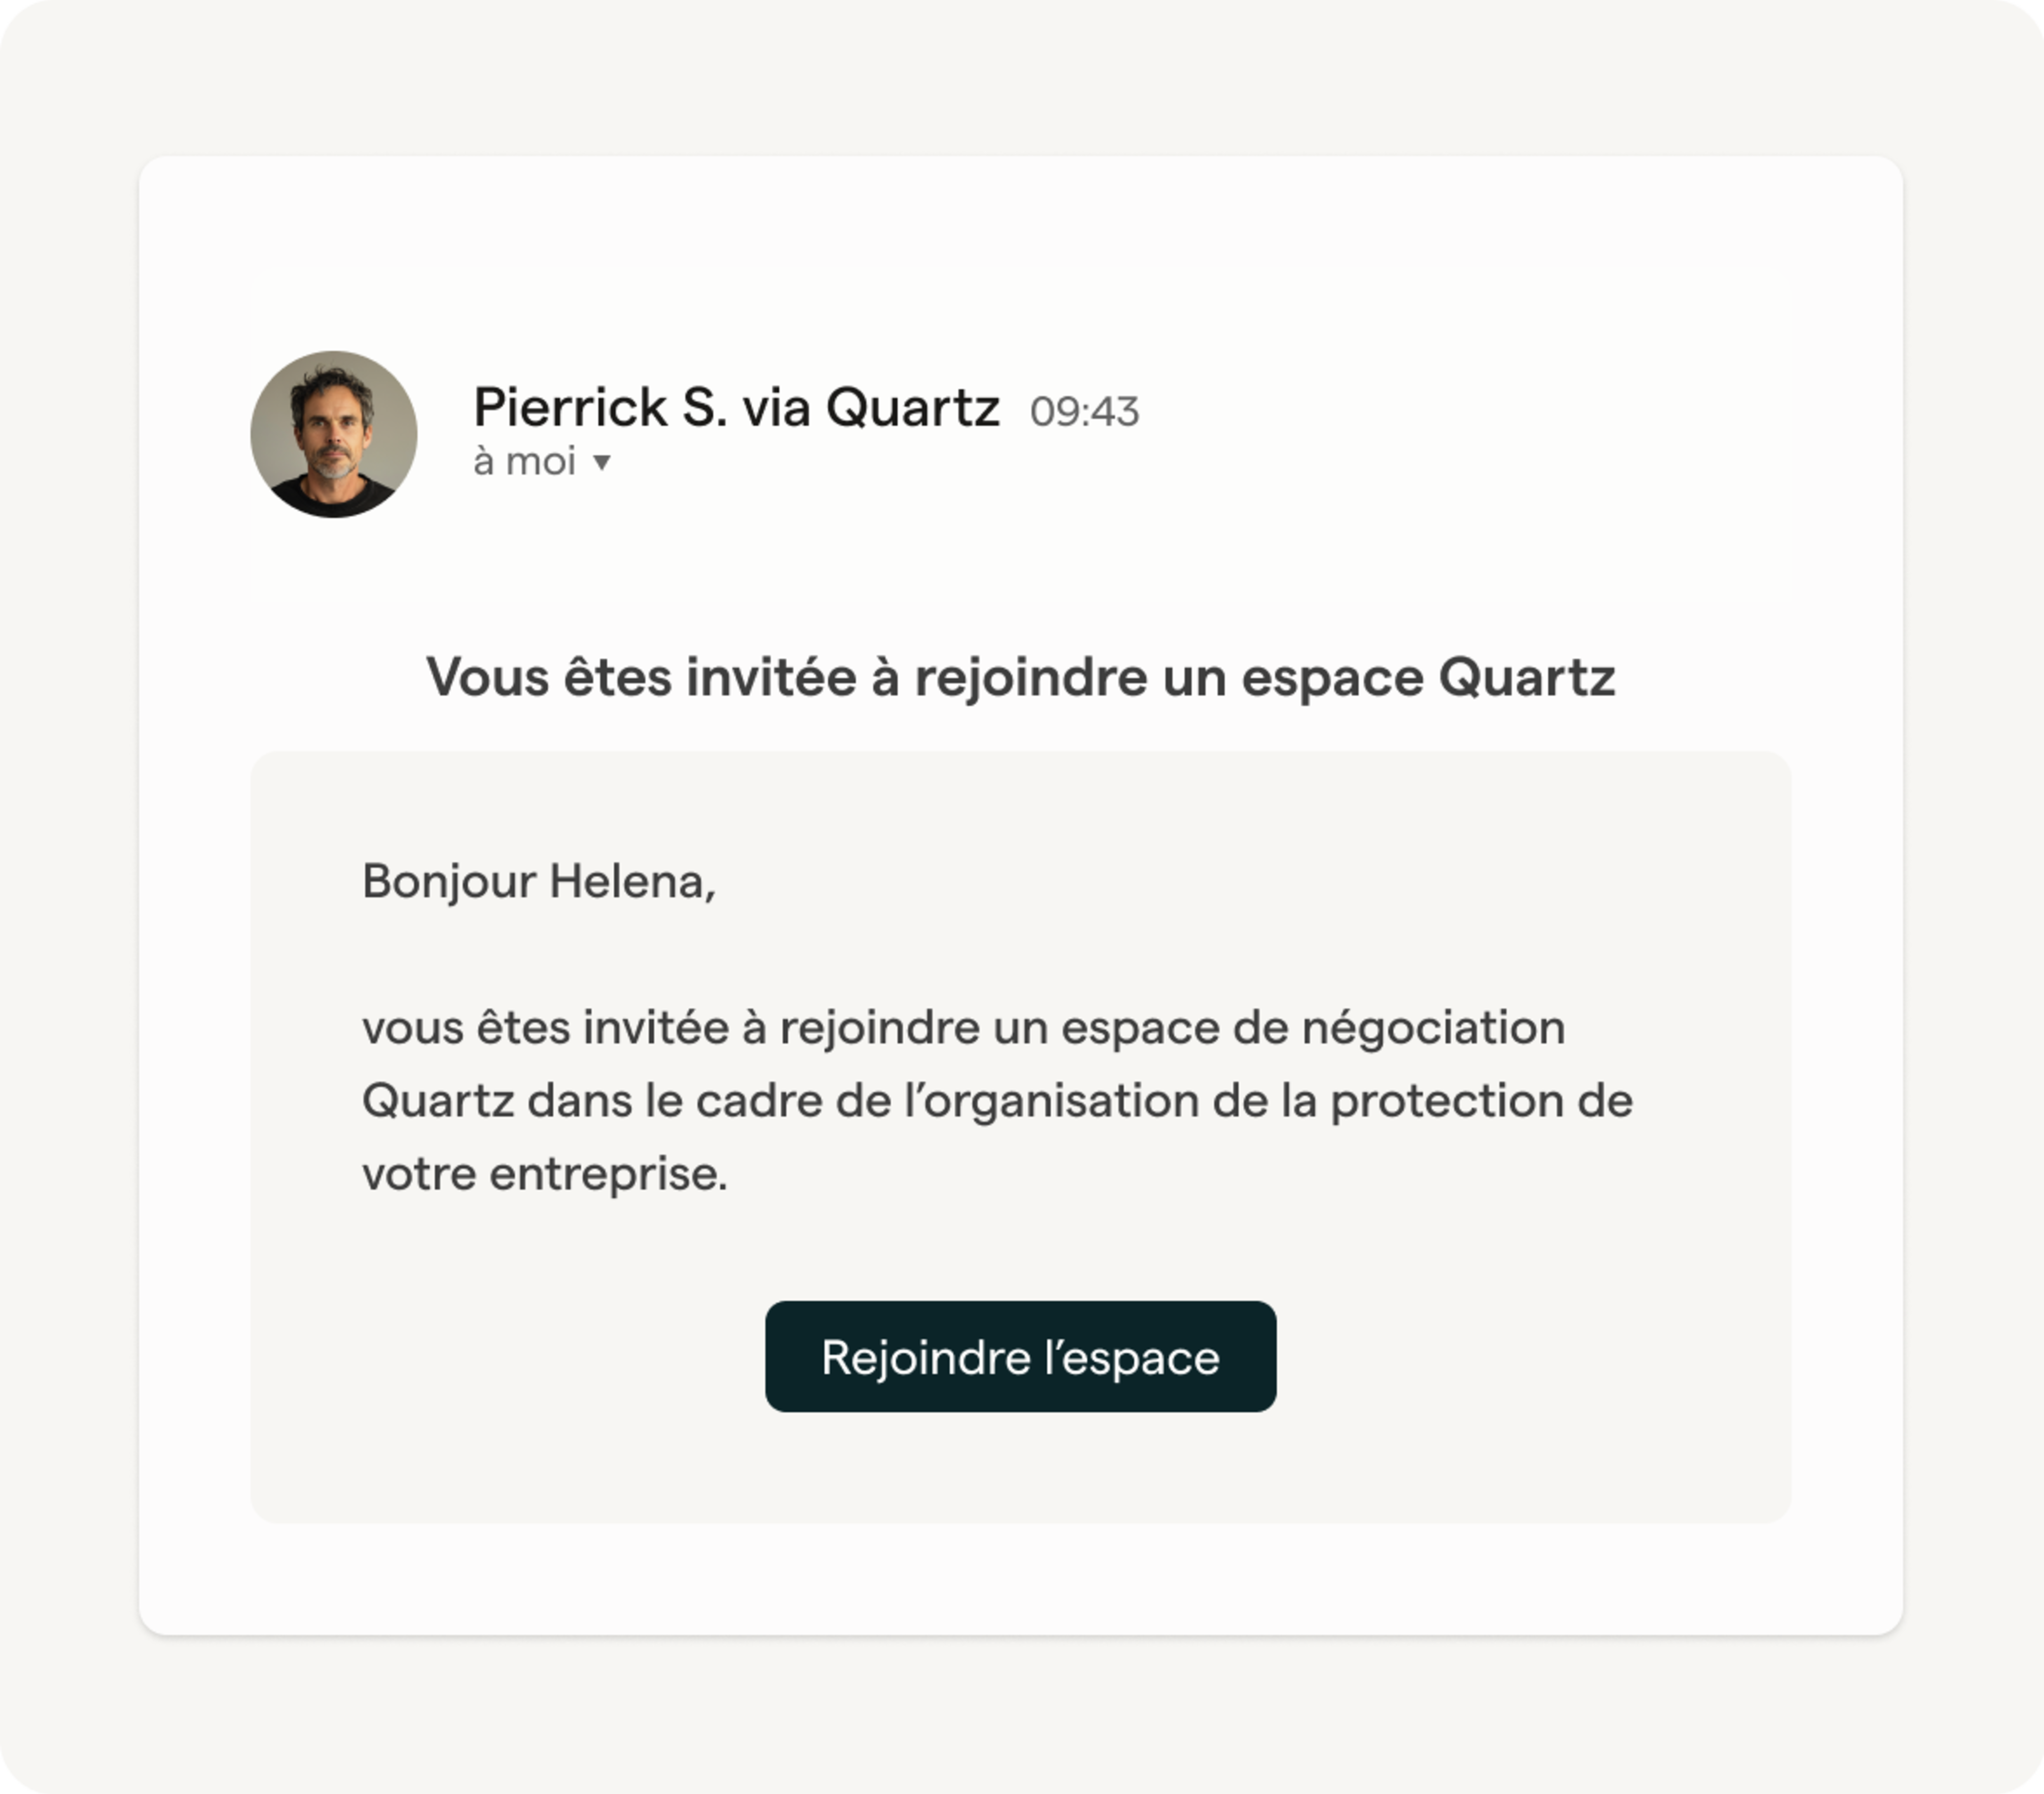 E-mail de Pierrick S. envoyé via la plateforme Quartz invitant Helena à rejoindre un espace de négociation dans le cadre de l'organisation de la protection de son entreprise.